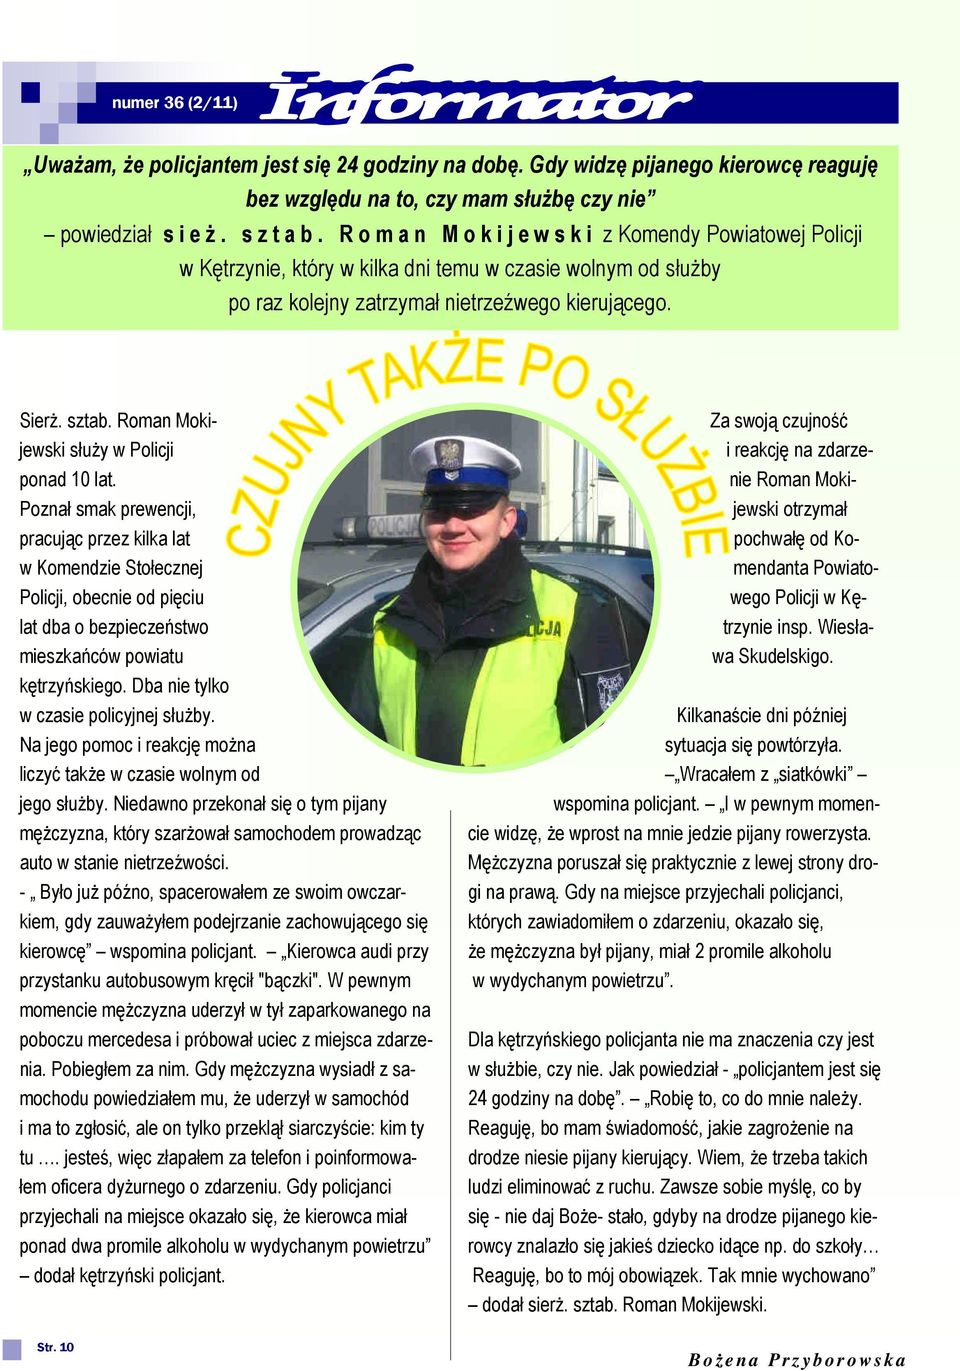 Roman Mokijewski służy w Policji ponad 10 lat.